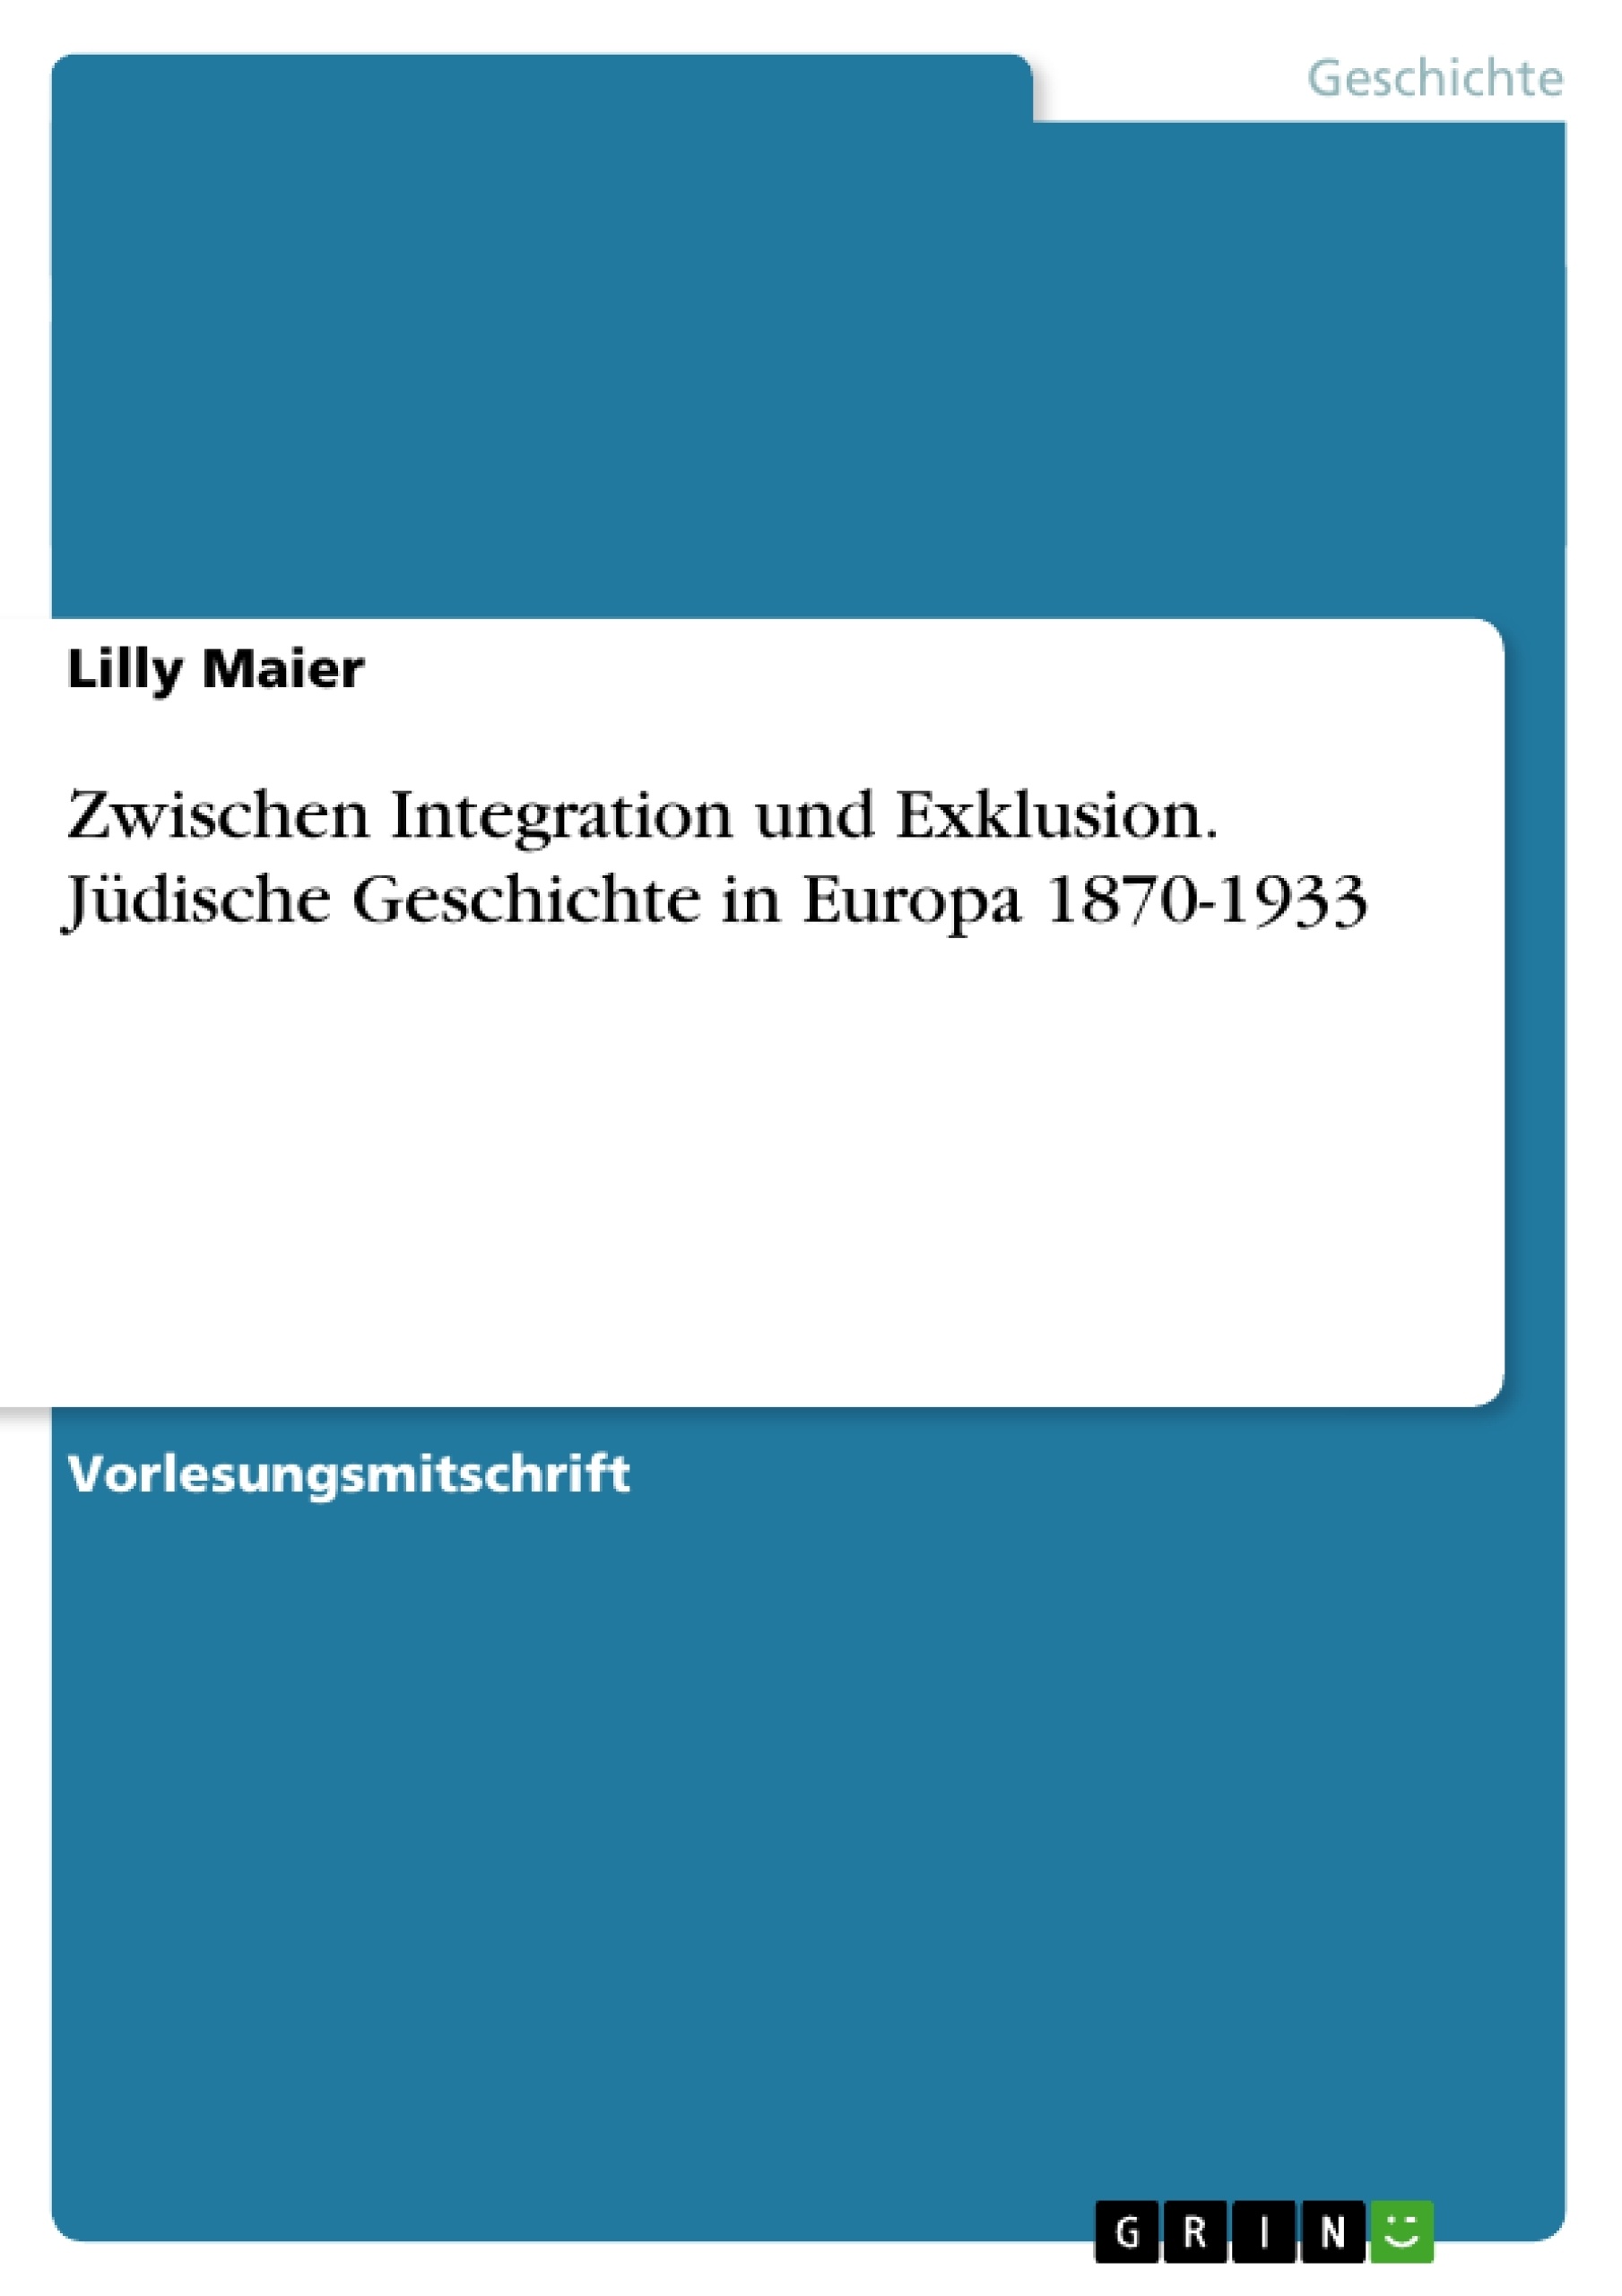 Título: Zwischen Integration und Exklusion. Jüdische Geschichte in Europa 1870-1933